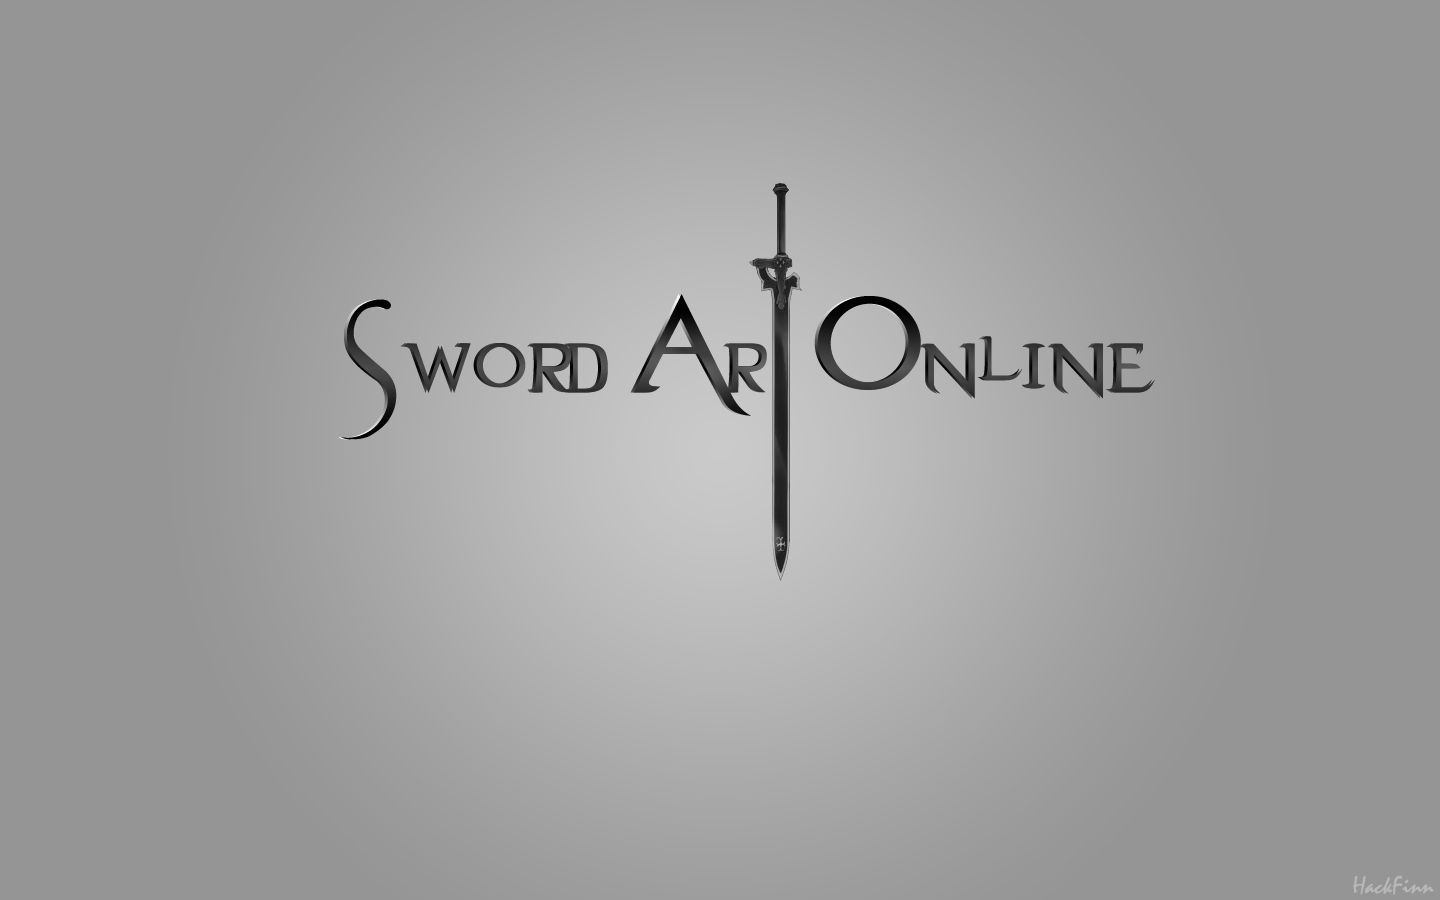 sword art online, anime, logo phone wallpaper